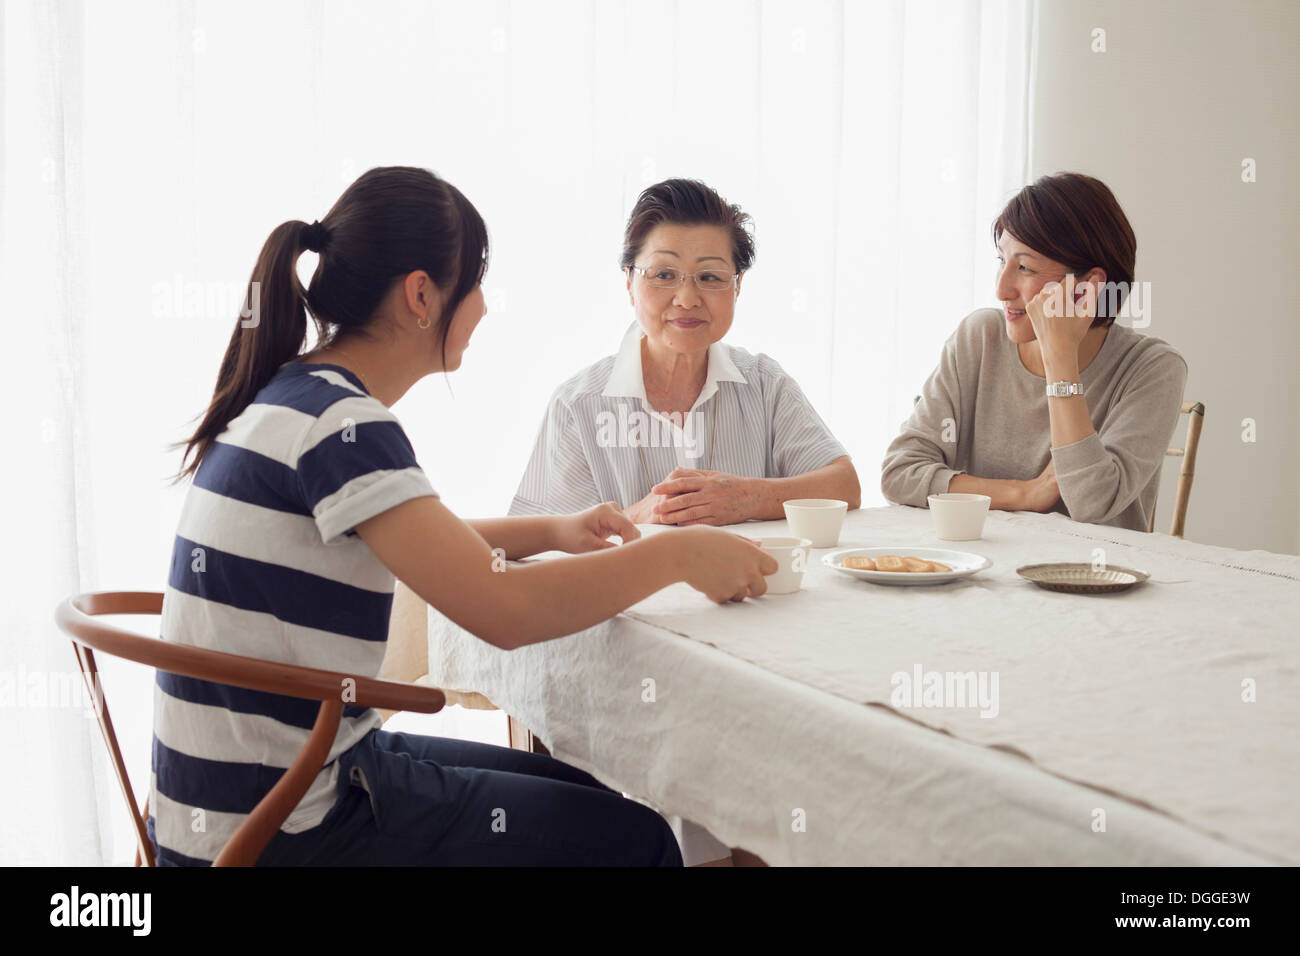 Three generation family at table Stock Photo